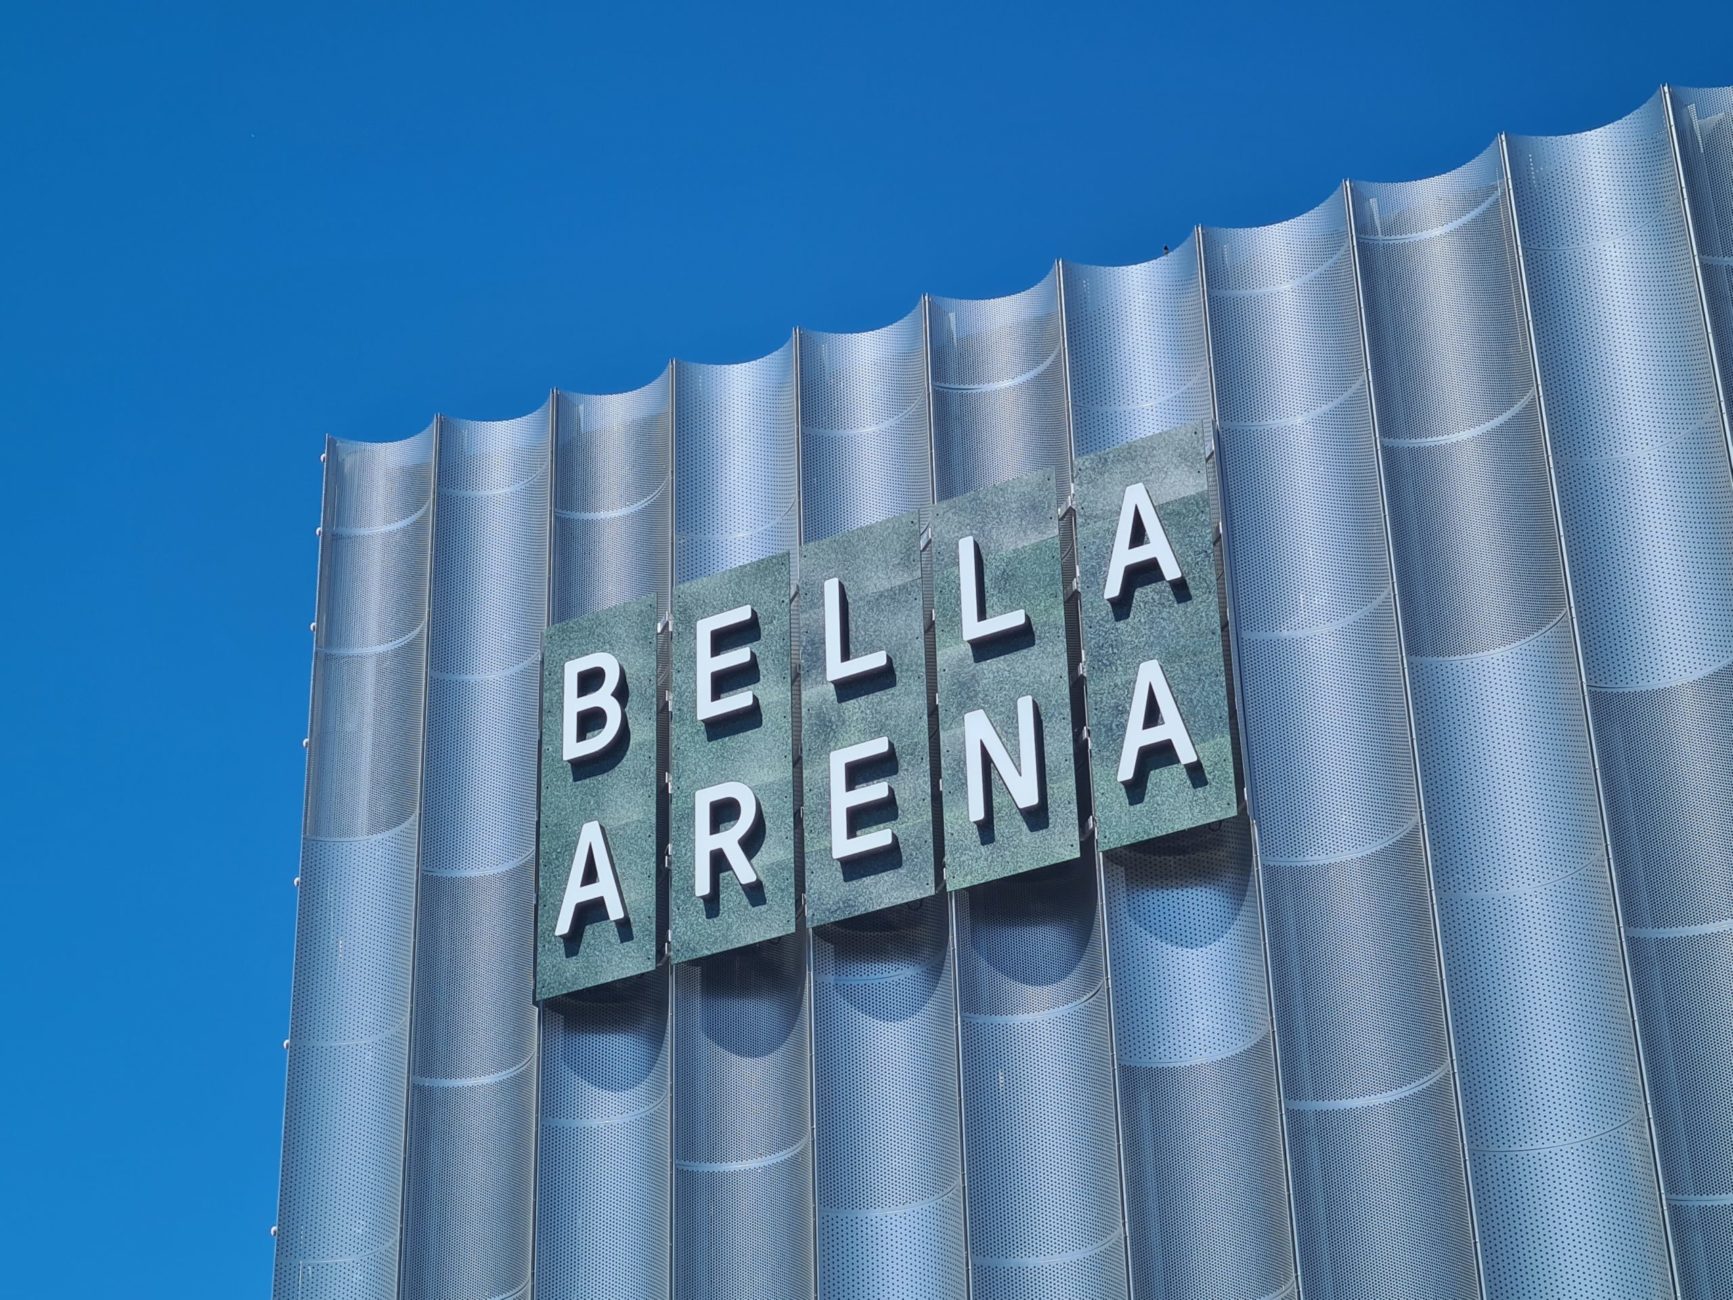 Bella Arena Fusø material for sign